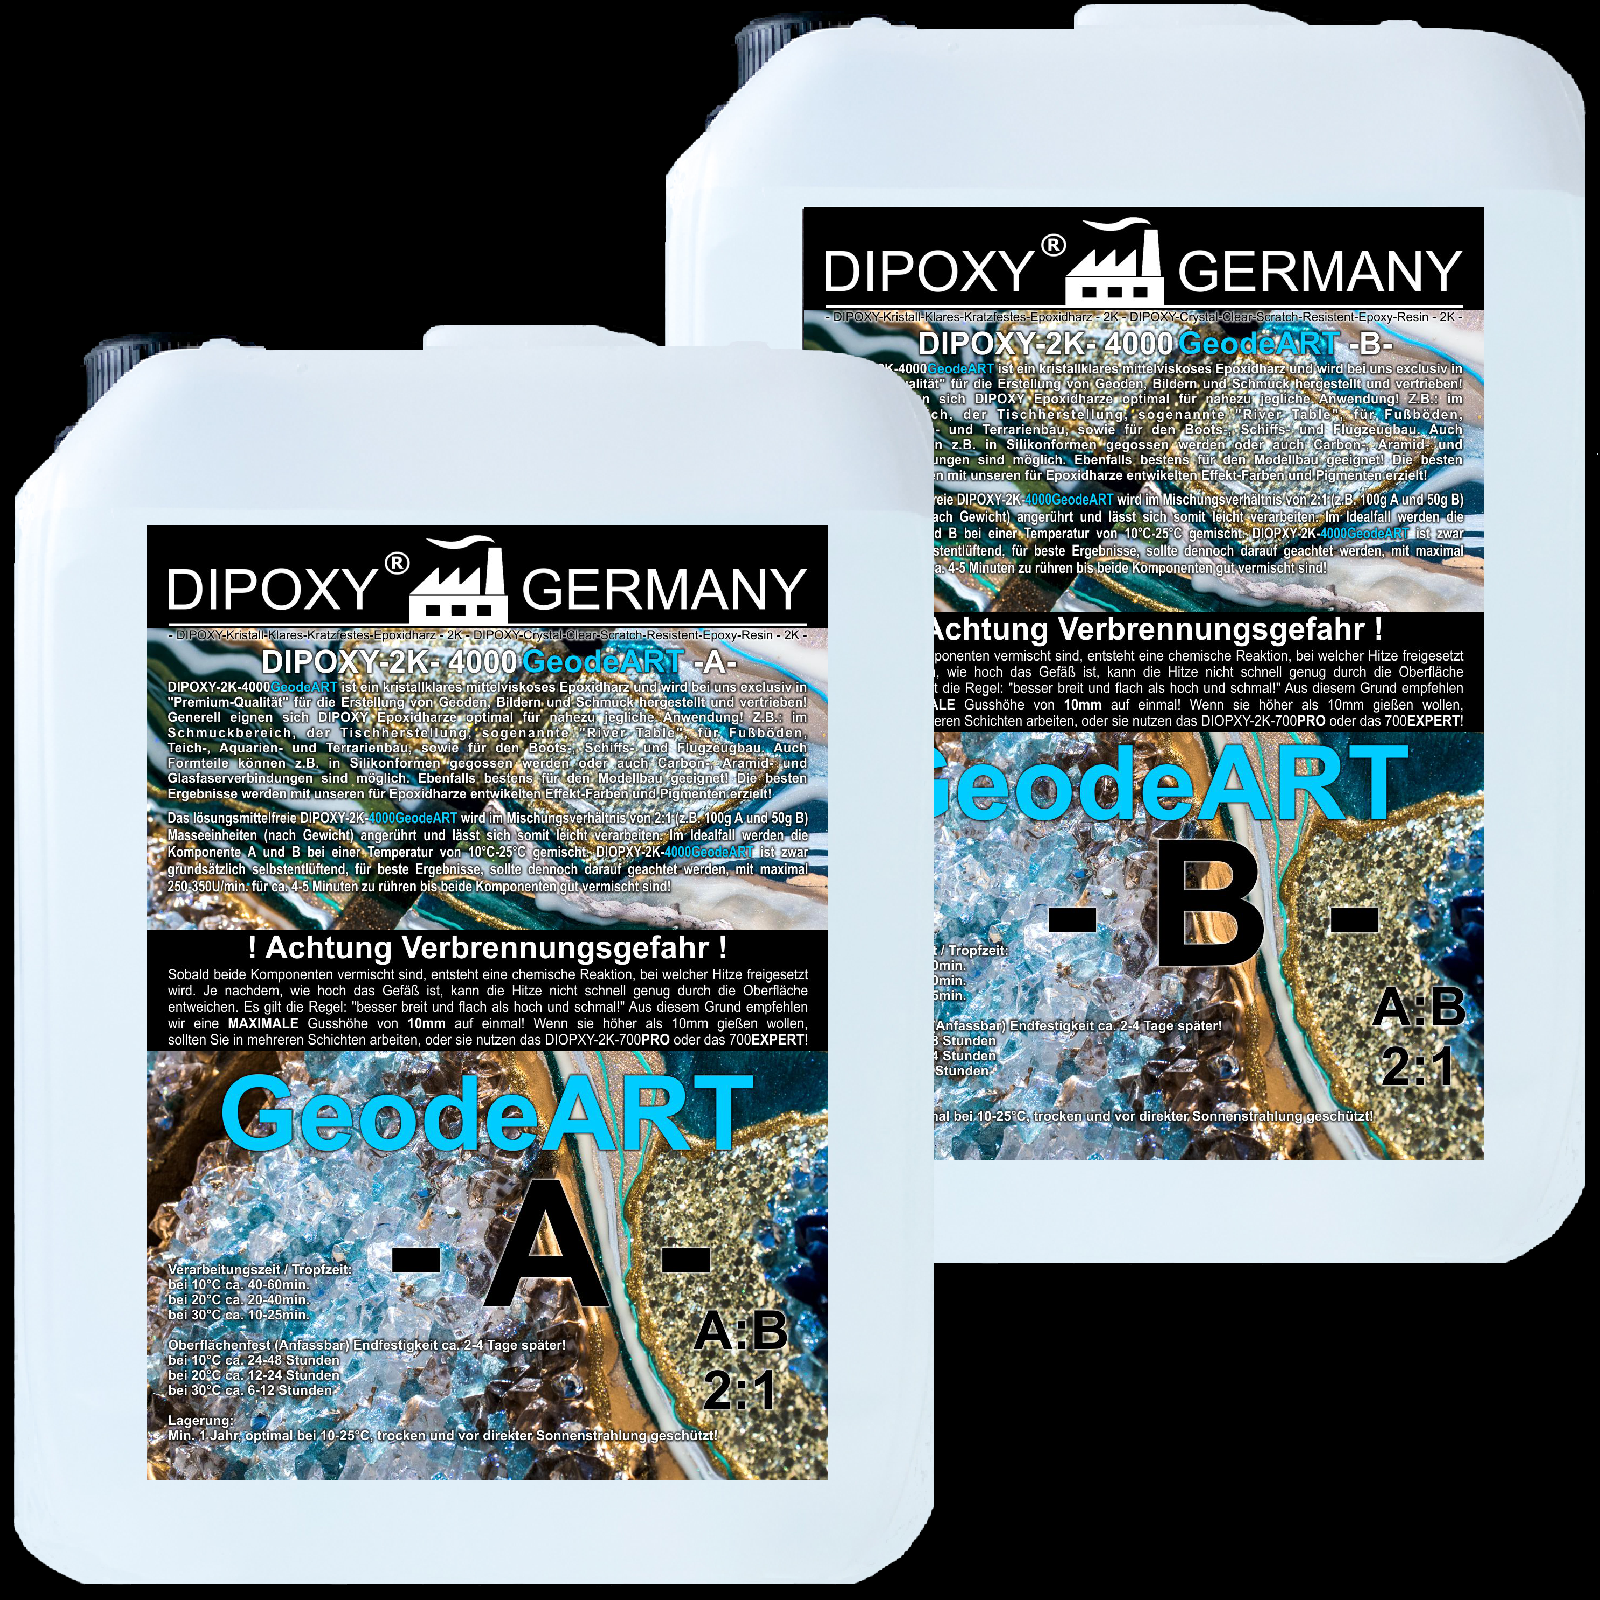 Dipoxy 500 g Premium 2 composants Silicone Type s1 dubliersilikon 2x500g